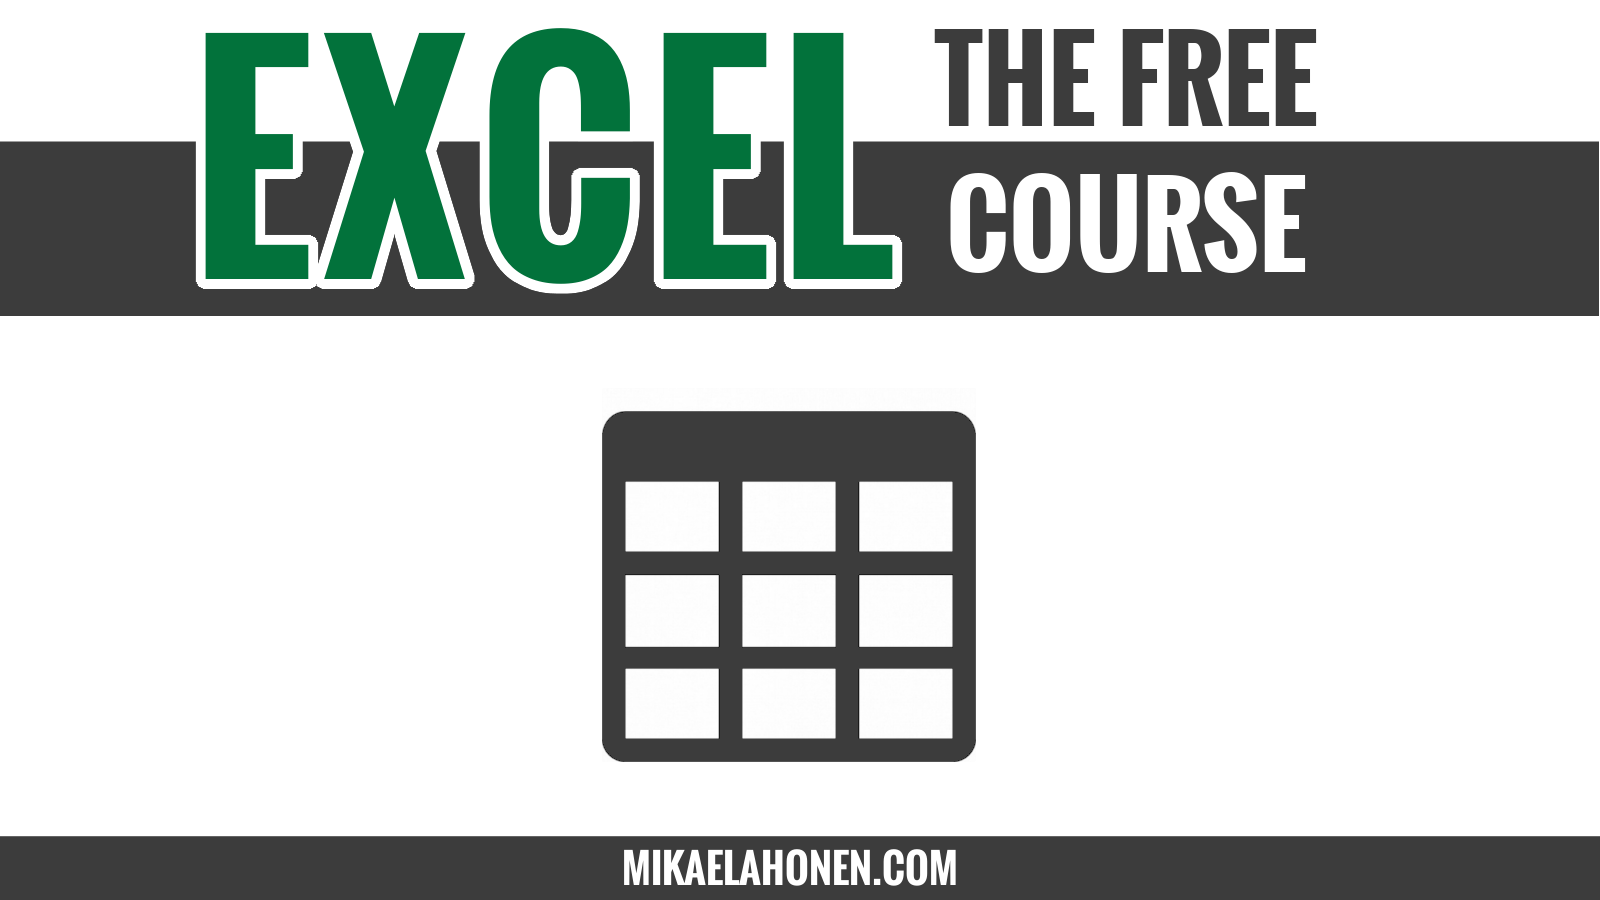 Yhteenveto Taulukkorakenteella on muutama erityispiirre verratuuna tavallisiin soluihin. Excelin taulukkomuodossa olevaa dataa voi helommin lajitella, suodattaa ja laskea.